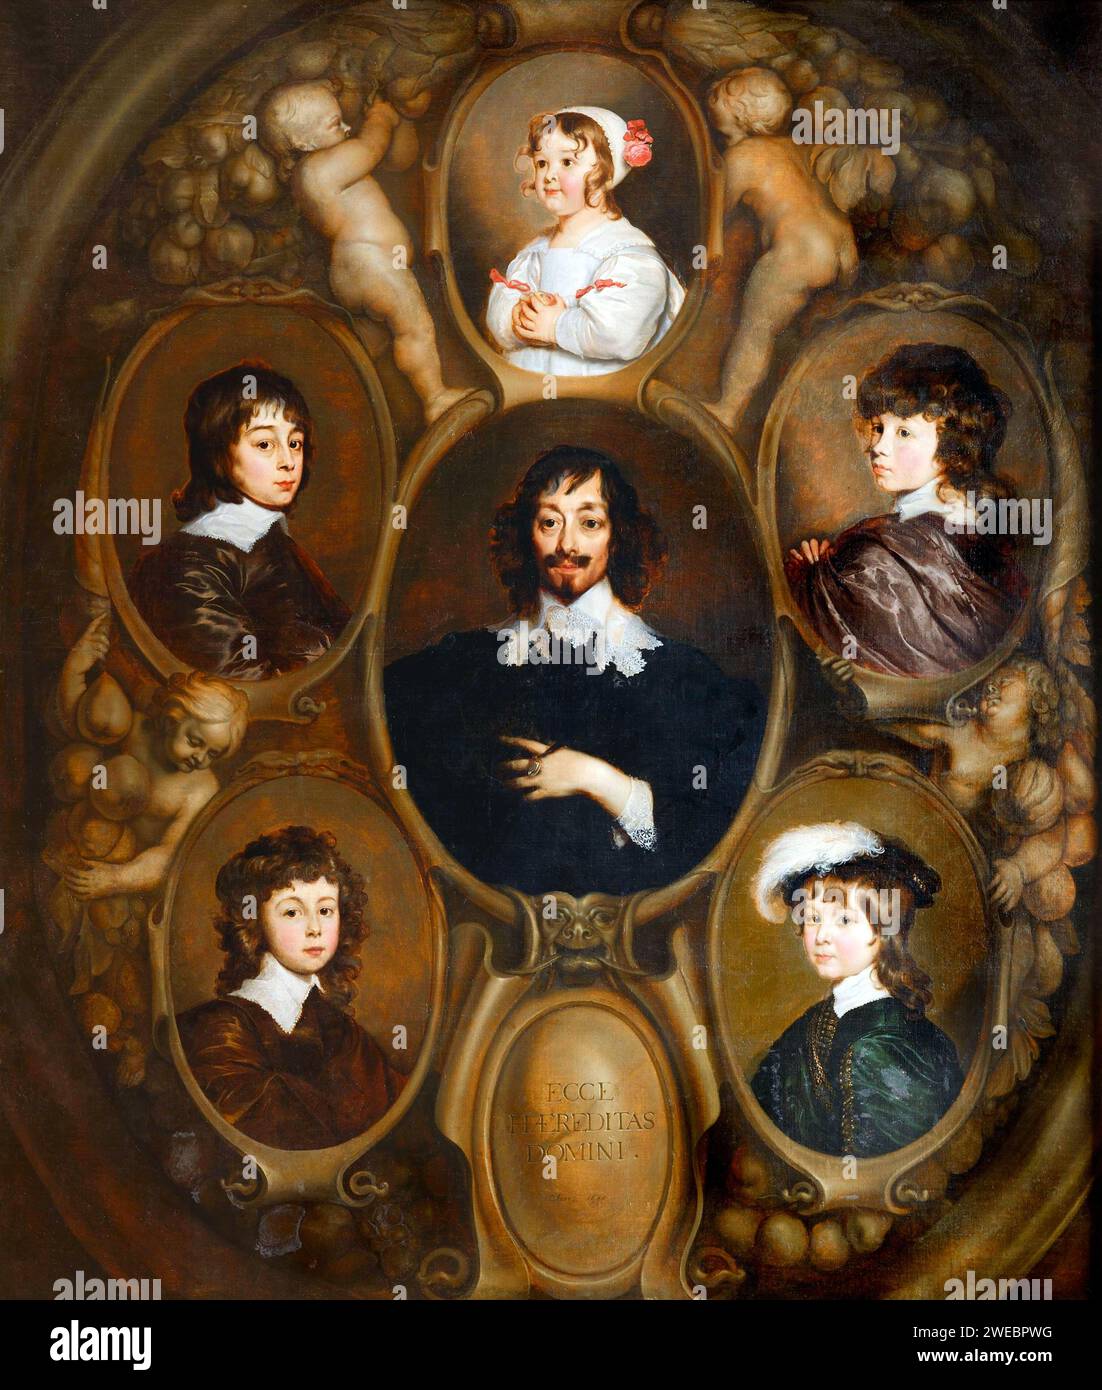 Constantijn Huygens e i suoi figli di Adriaen Hanneman i suoi cinque figli Constantijn II (T.r.; 1628-1697), Christiaen (B.l.; 1629-1695), Lodewijk (B.r.; 1631-1699), Philips (T.l.;1633-1699) e Suzanne (T.c.; 1637-1725) Foto Stock